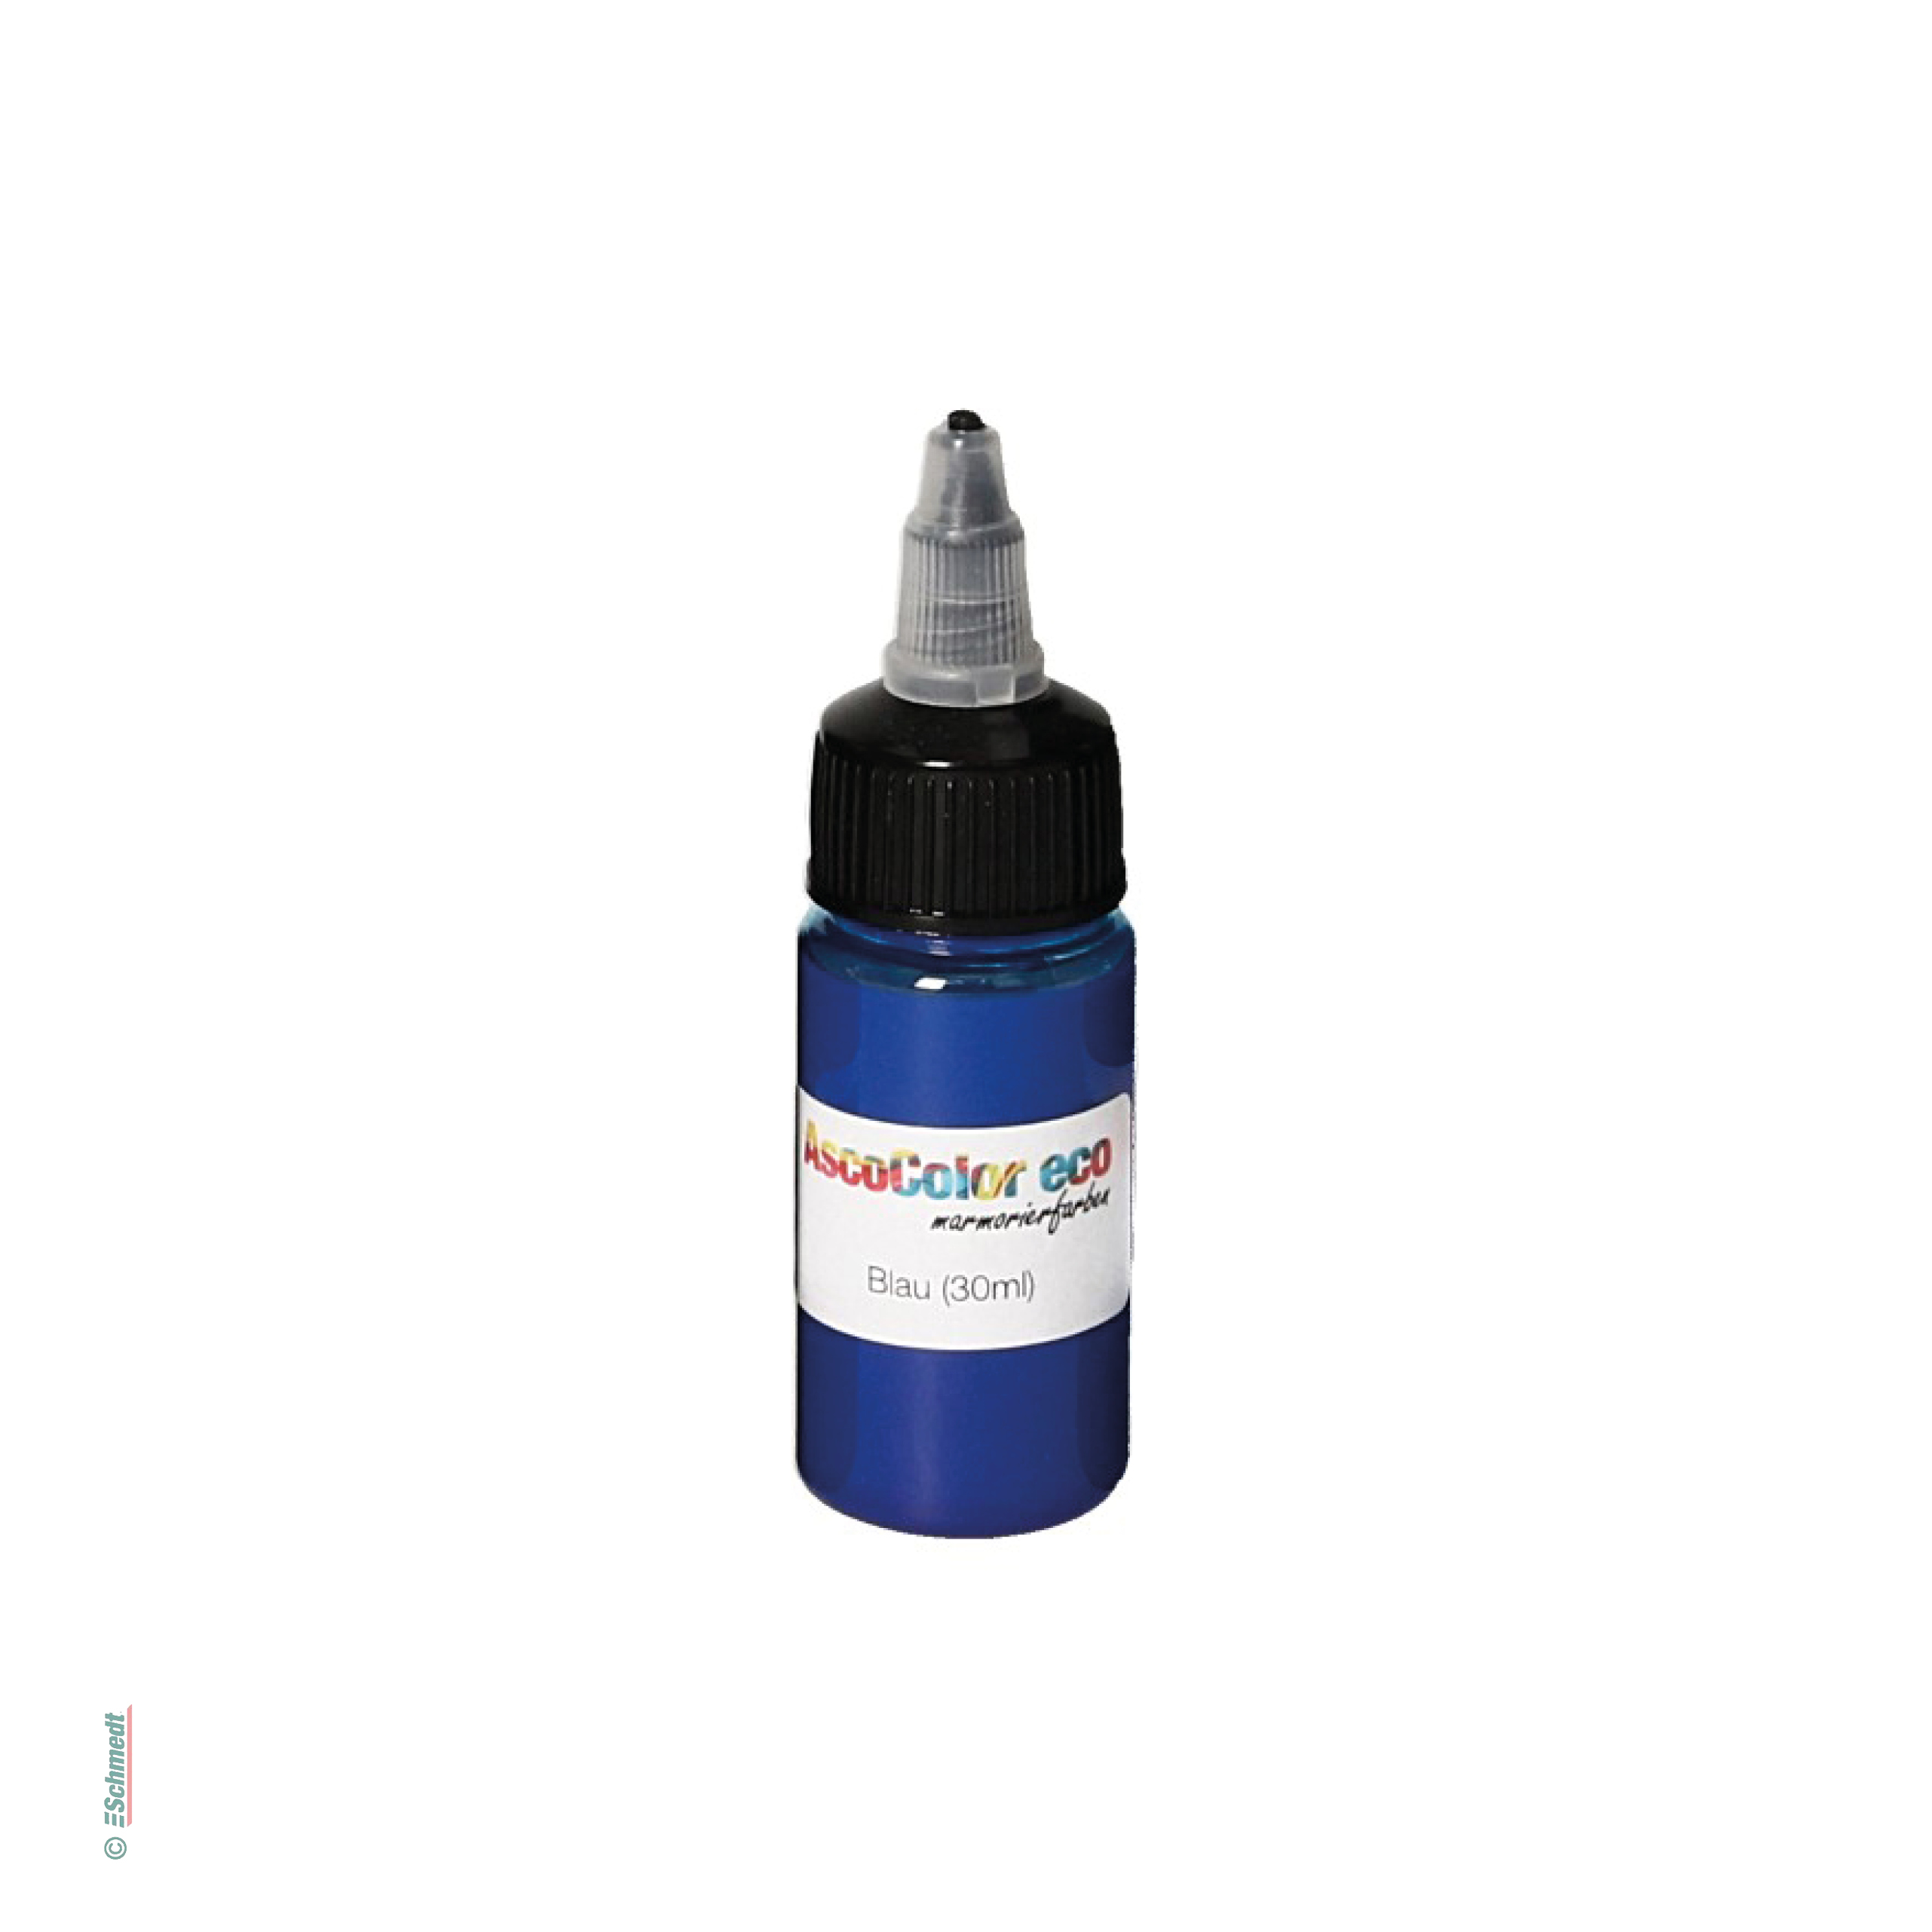 AscoColor eco - Marmorierfarbe - Farbe 105 - blau - Gebindegröße Flasche / 30 ml - zur Herstellung marmorierter Papiere...